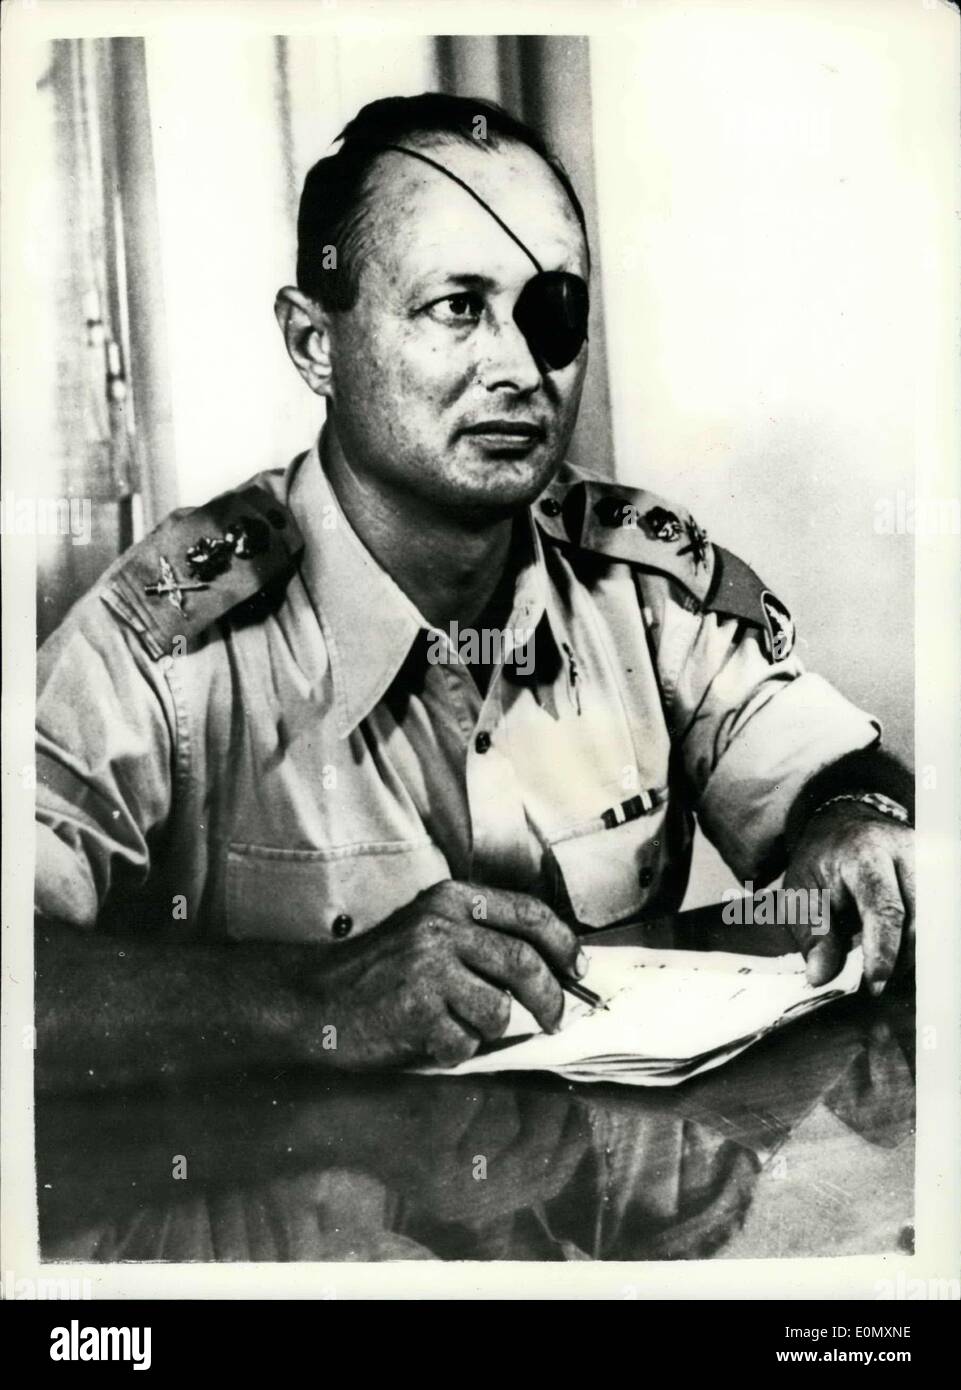 Ottobre 30, 1956 - Israele invade l'Egitto: il generale Moshe Dayan - Israele capo del personale: La foto mostra il generale Moshe Dayan - Chi è il Foto Stock